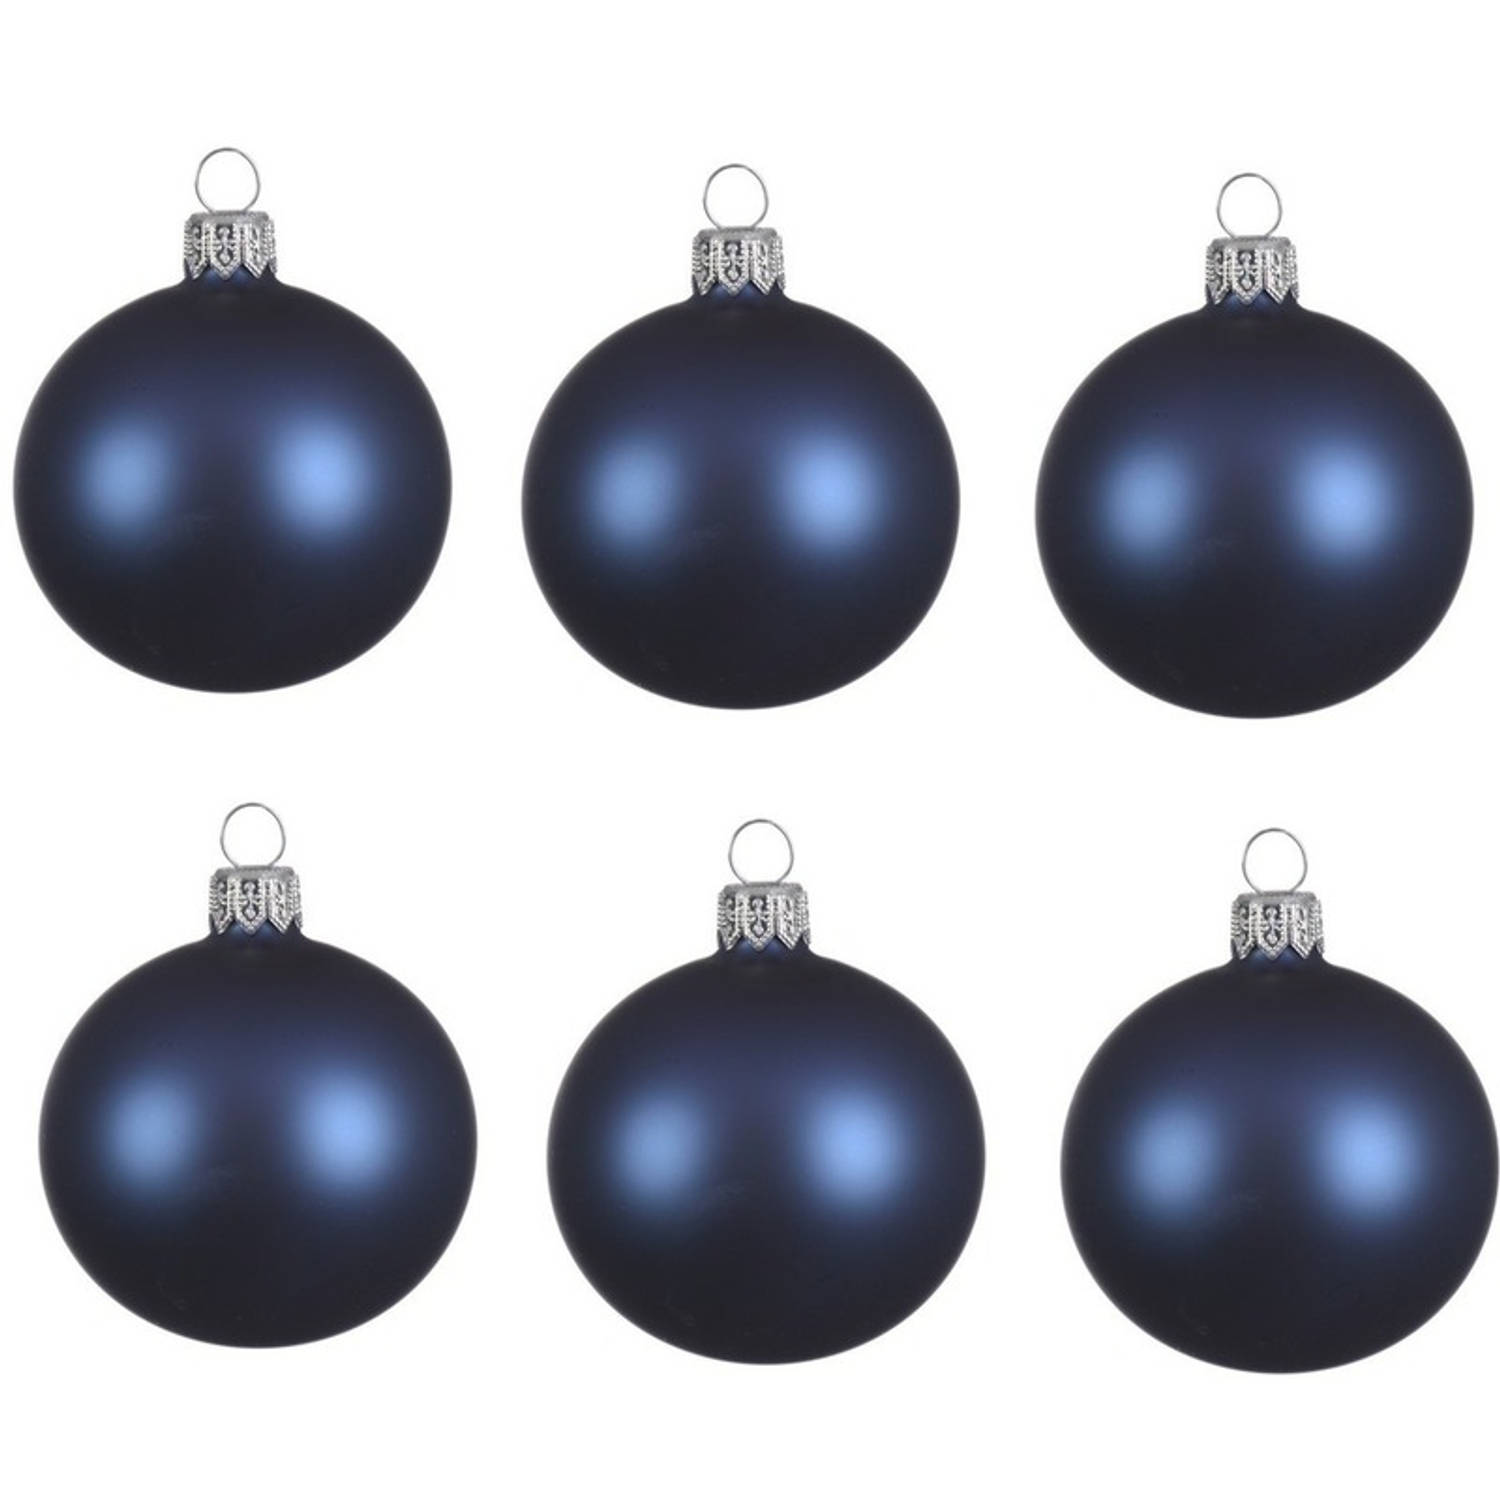 6x Glazen kerstballen mat donkerblauw 6 cm kerstboom versiering/decoratie - Kerstbal